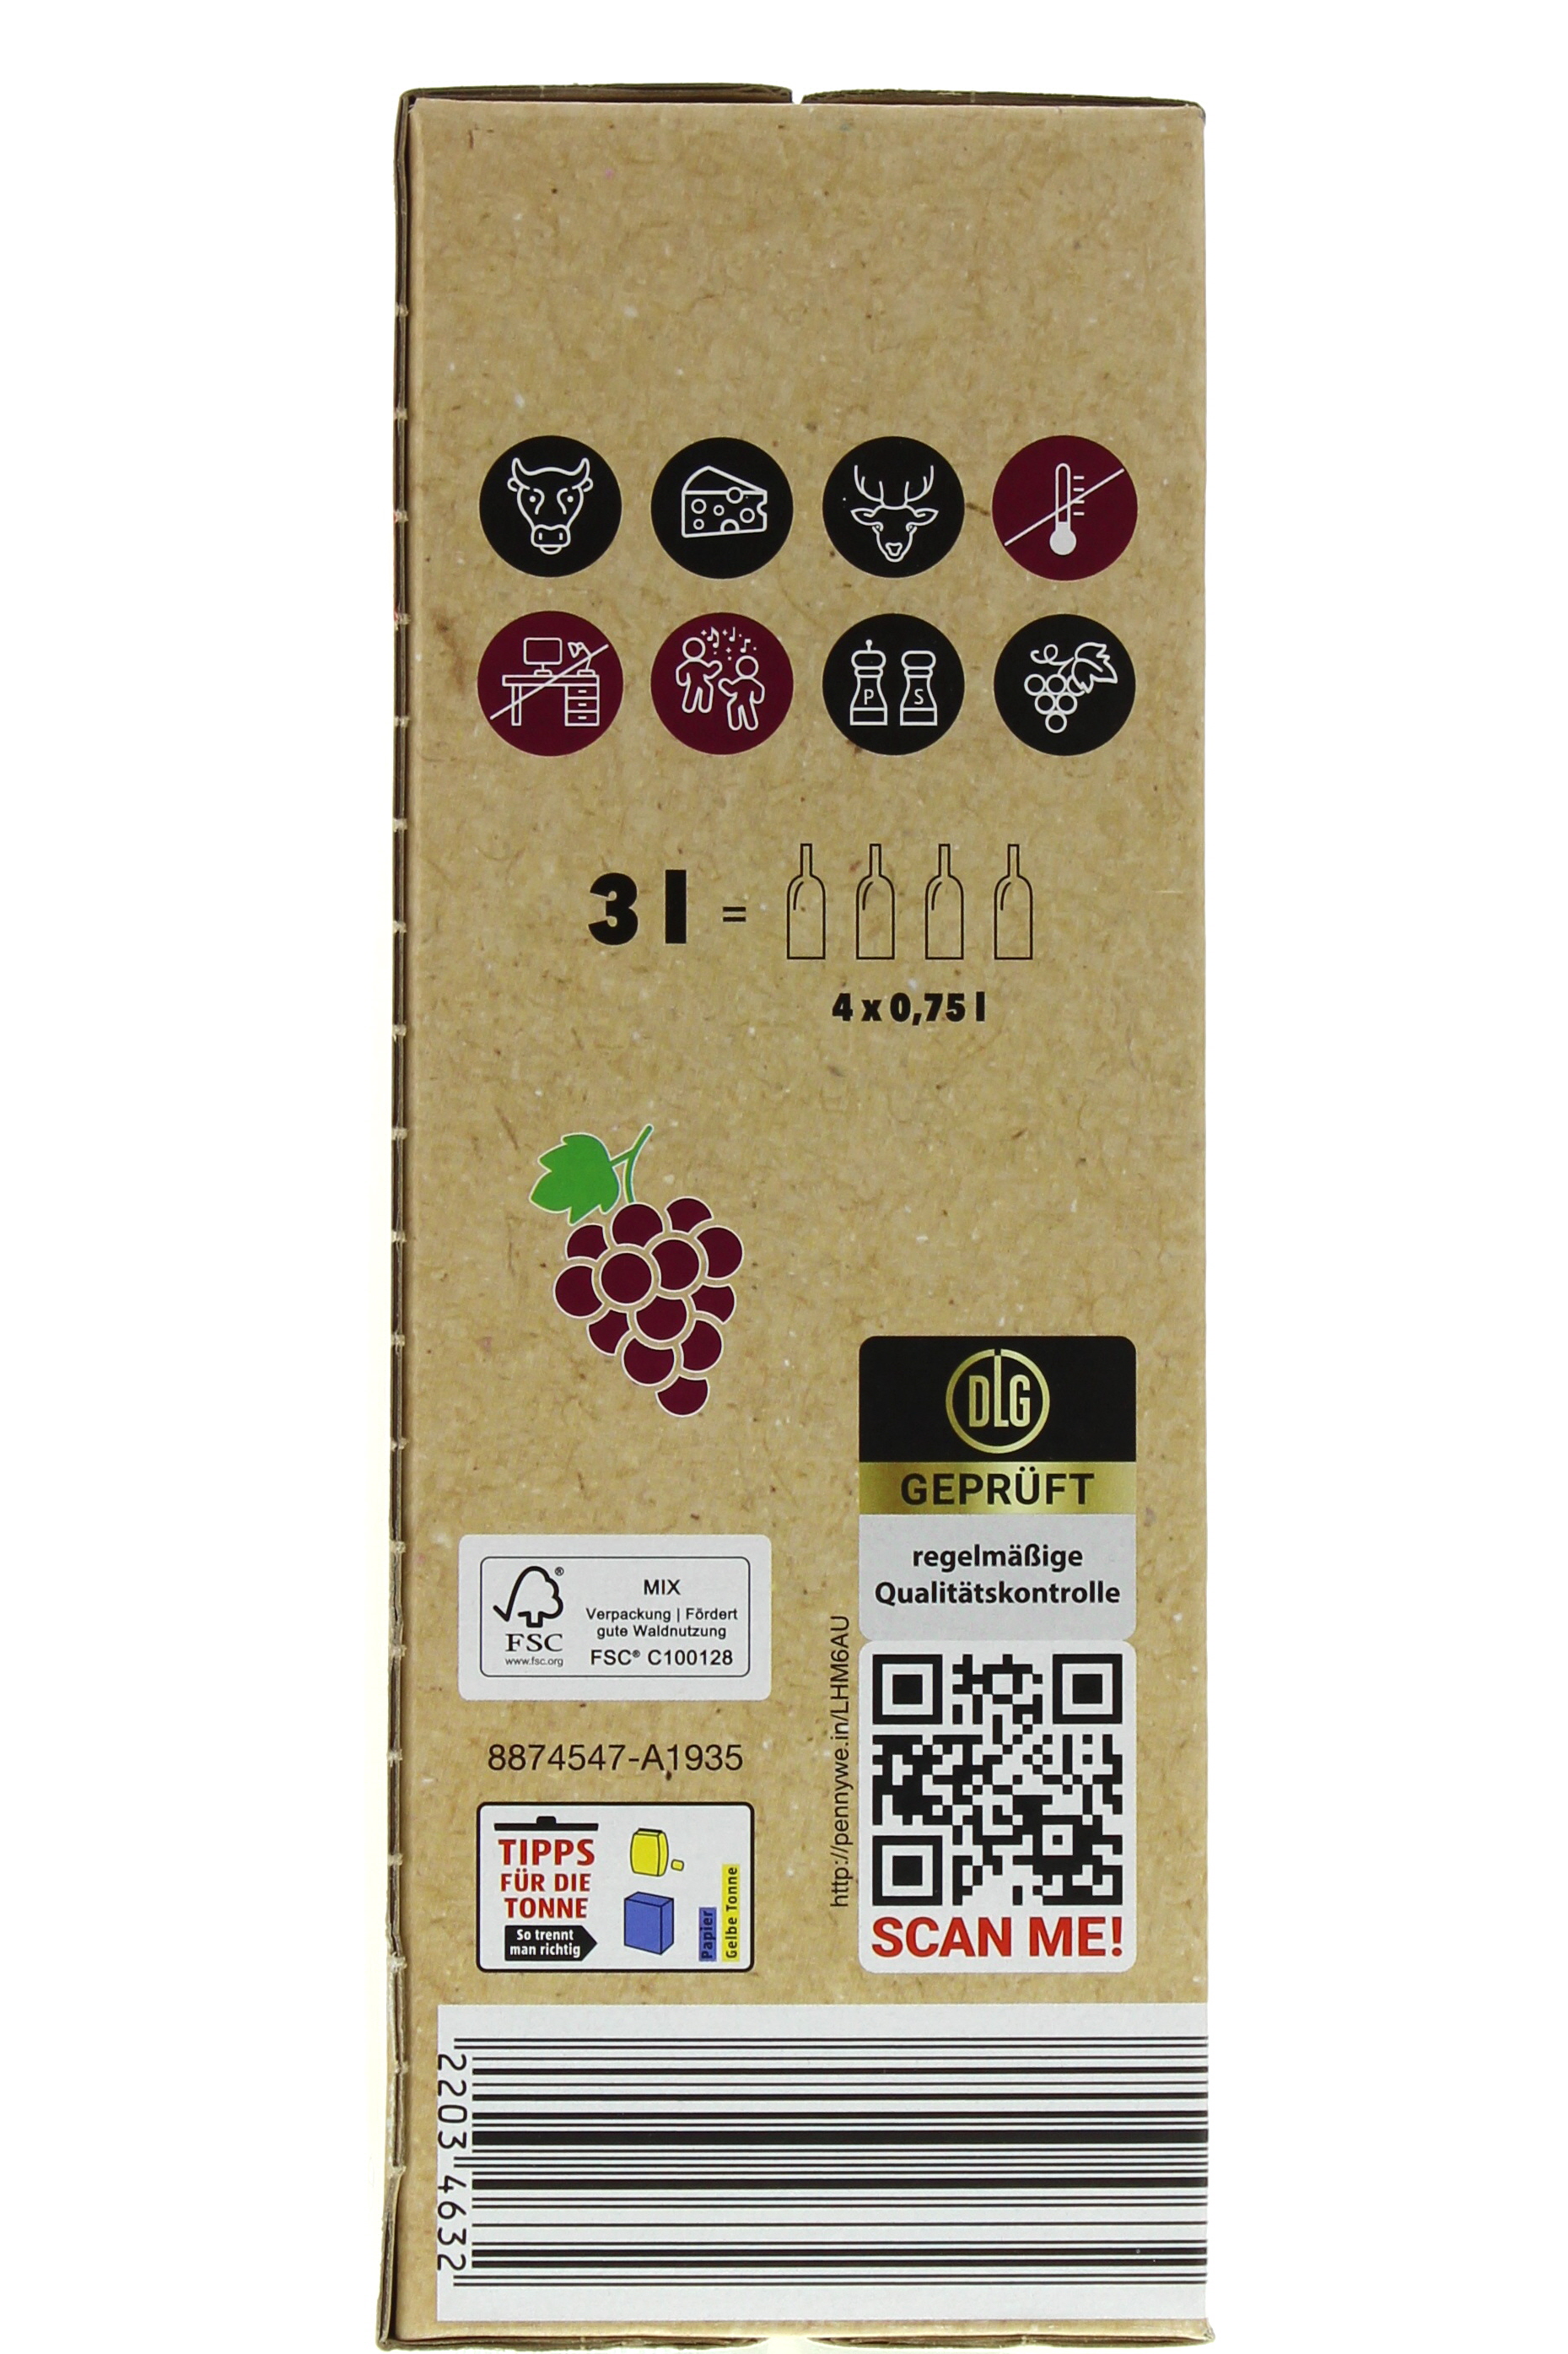 2022 Spanien Tempranillo 3,0 de PENNY Wein-App Mobile trocken España Syrah - l Vino Bag-in-Box